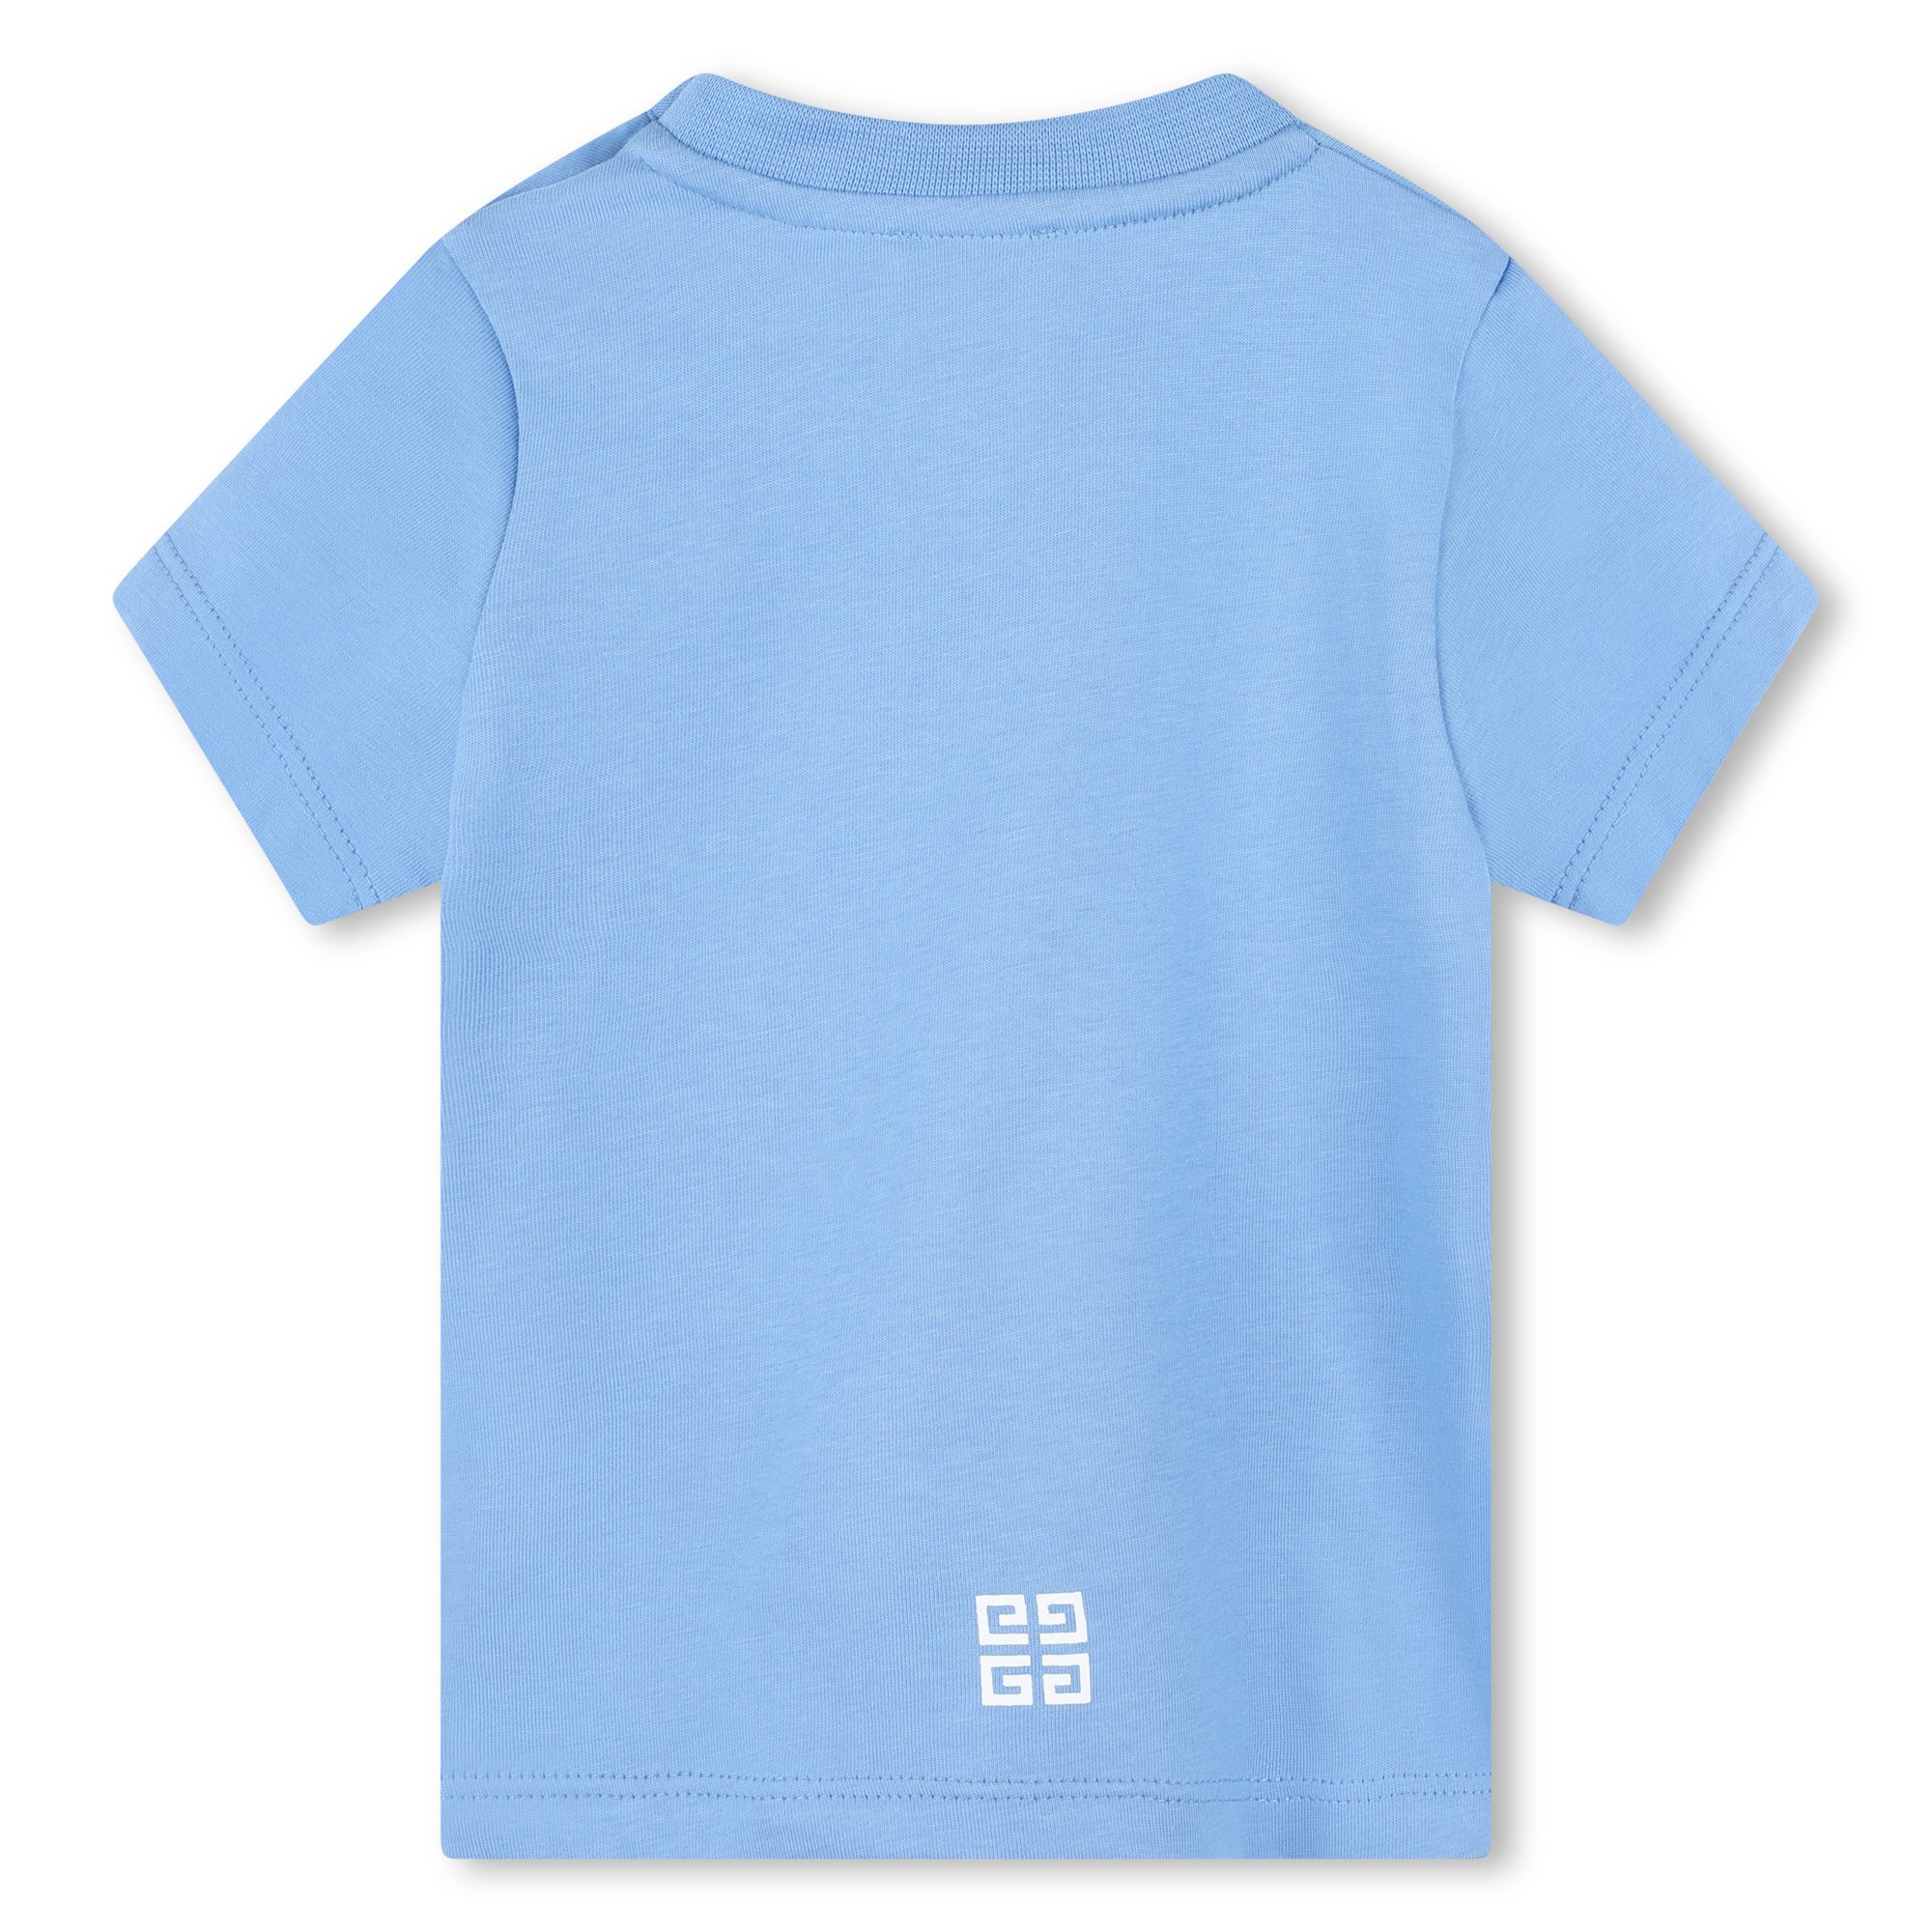 Baumwoll-T-Shirt mit Print GIVENCHY Für JUNGE